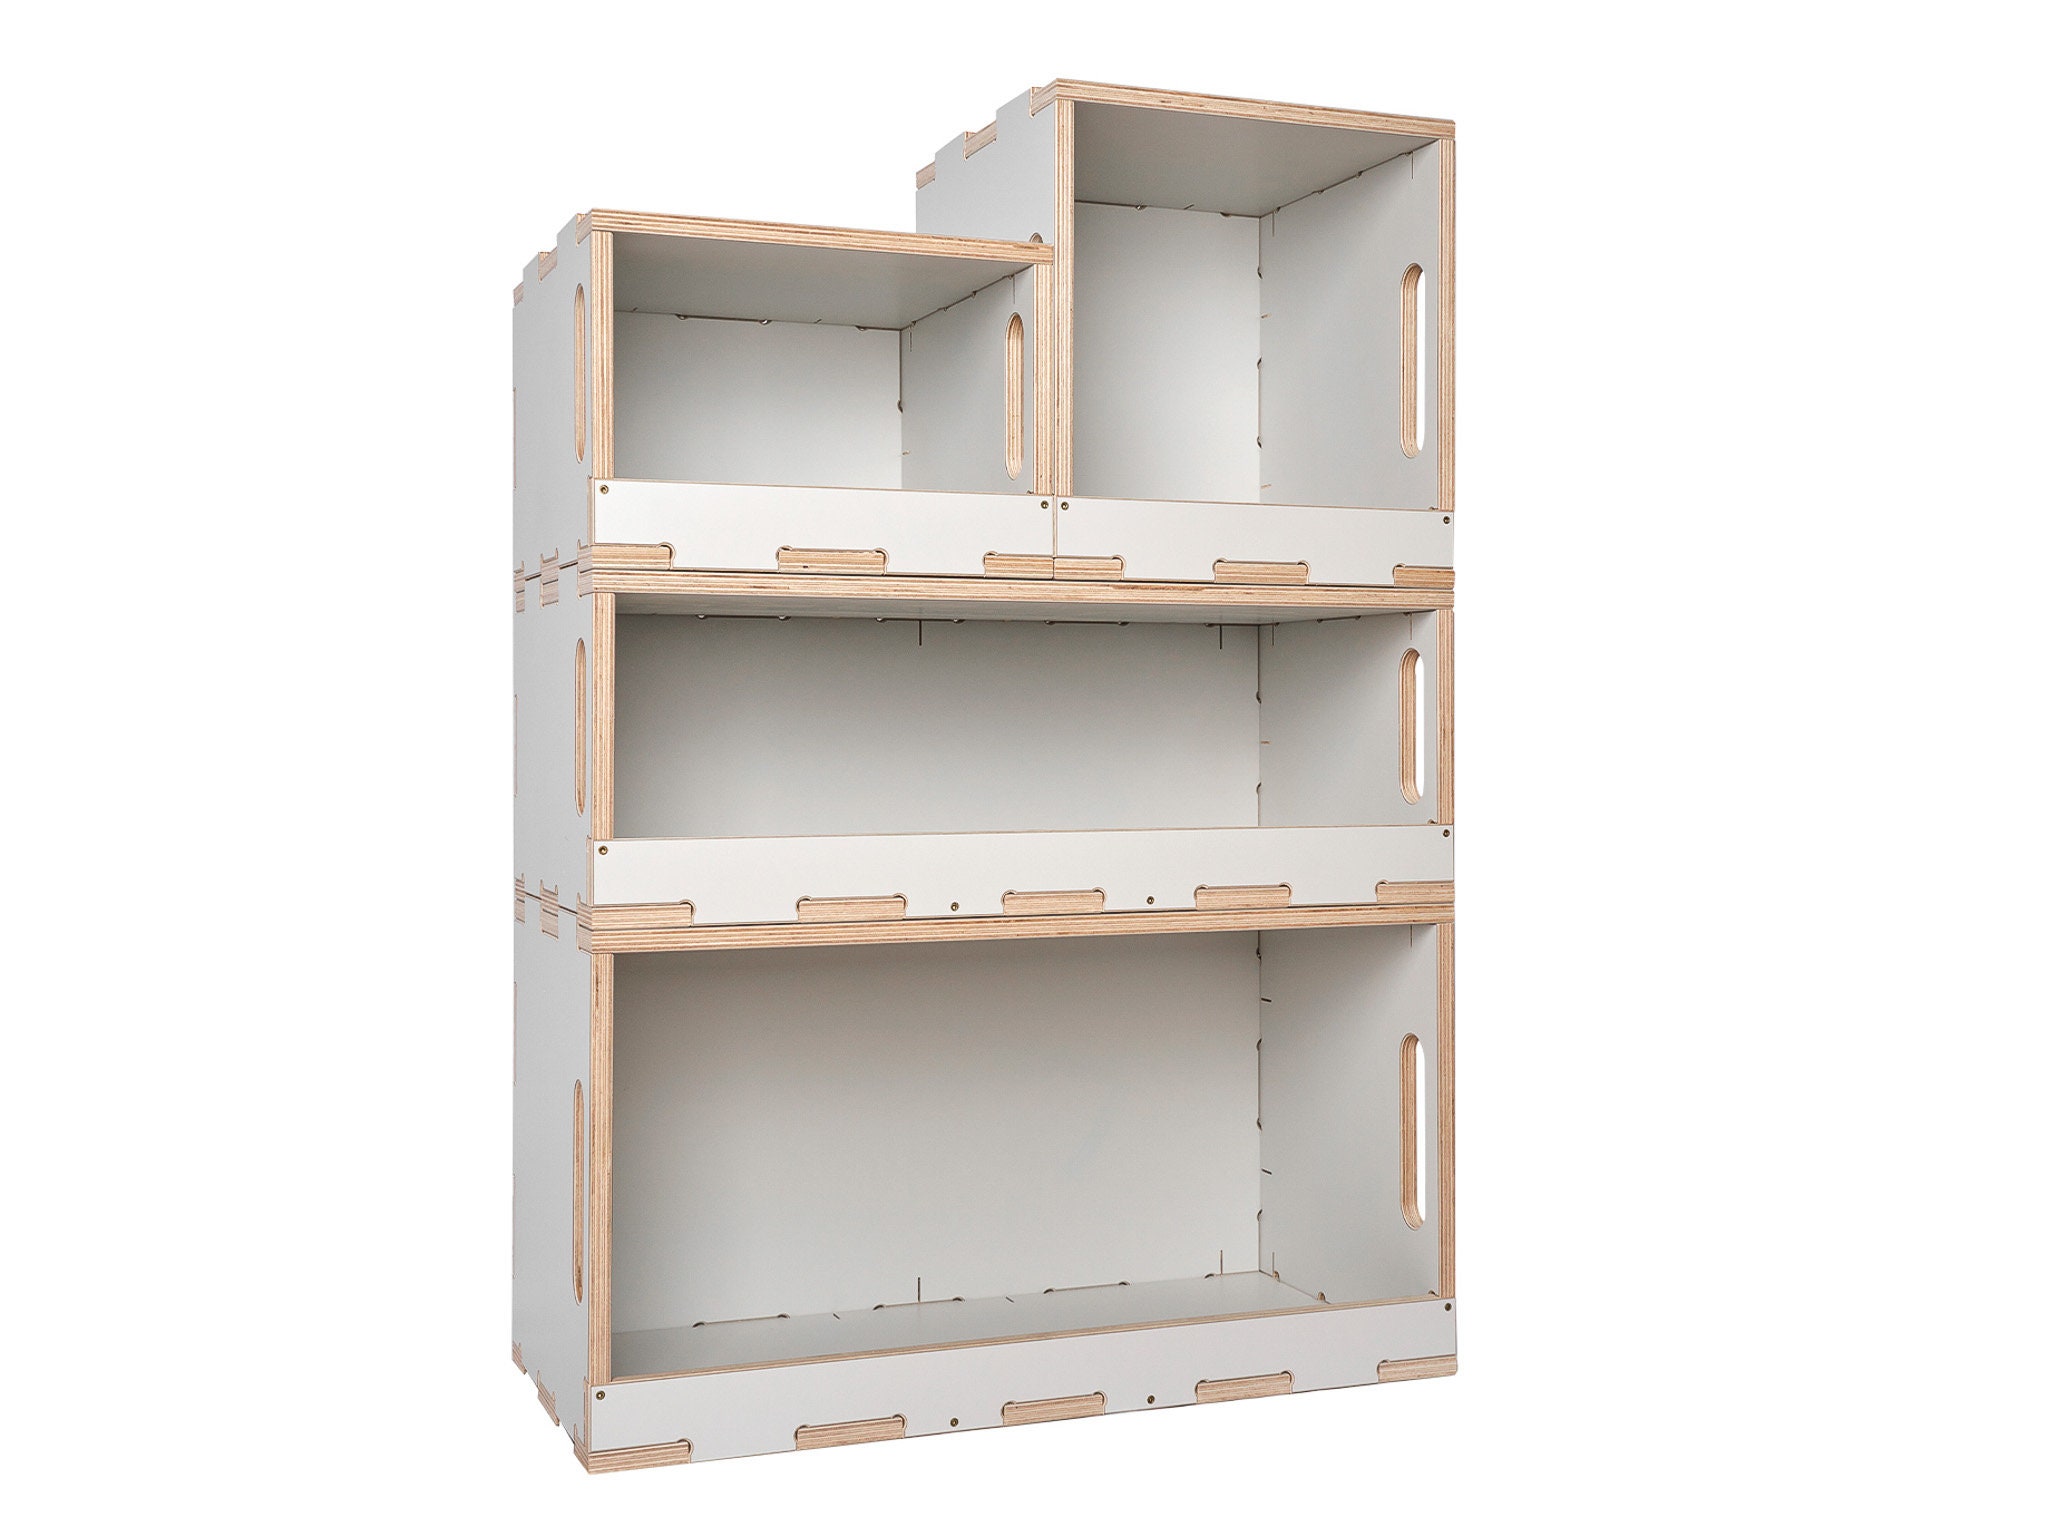 Simply Tidy Modular Storage Furniture  Starting at $47.99 :: Southern  Savers